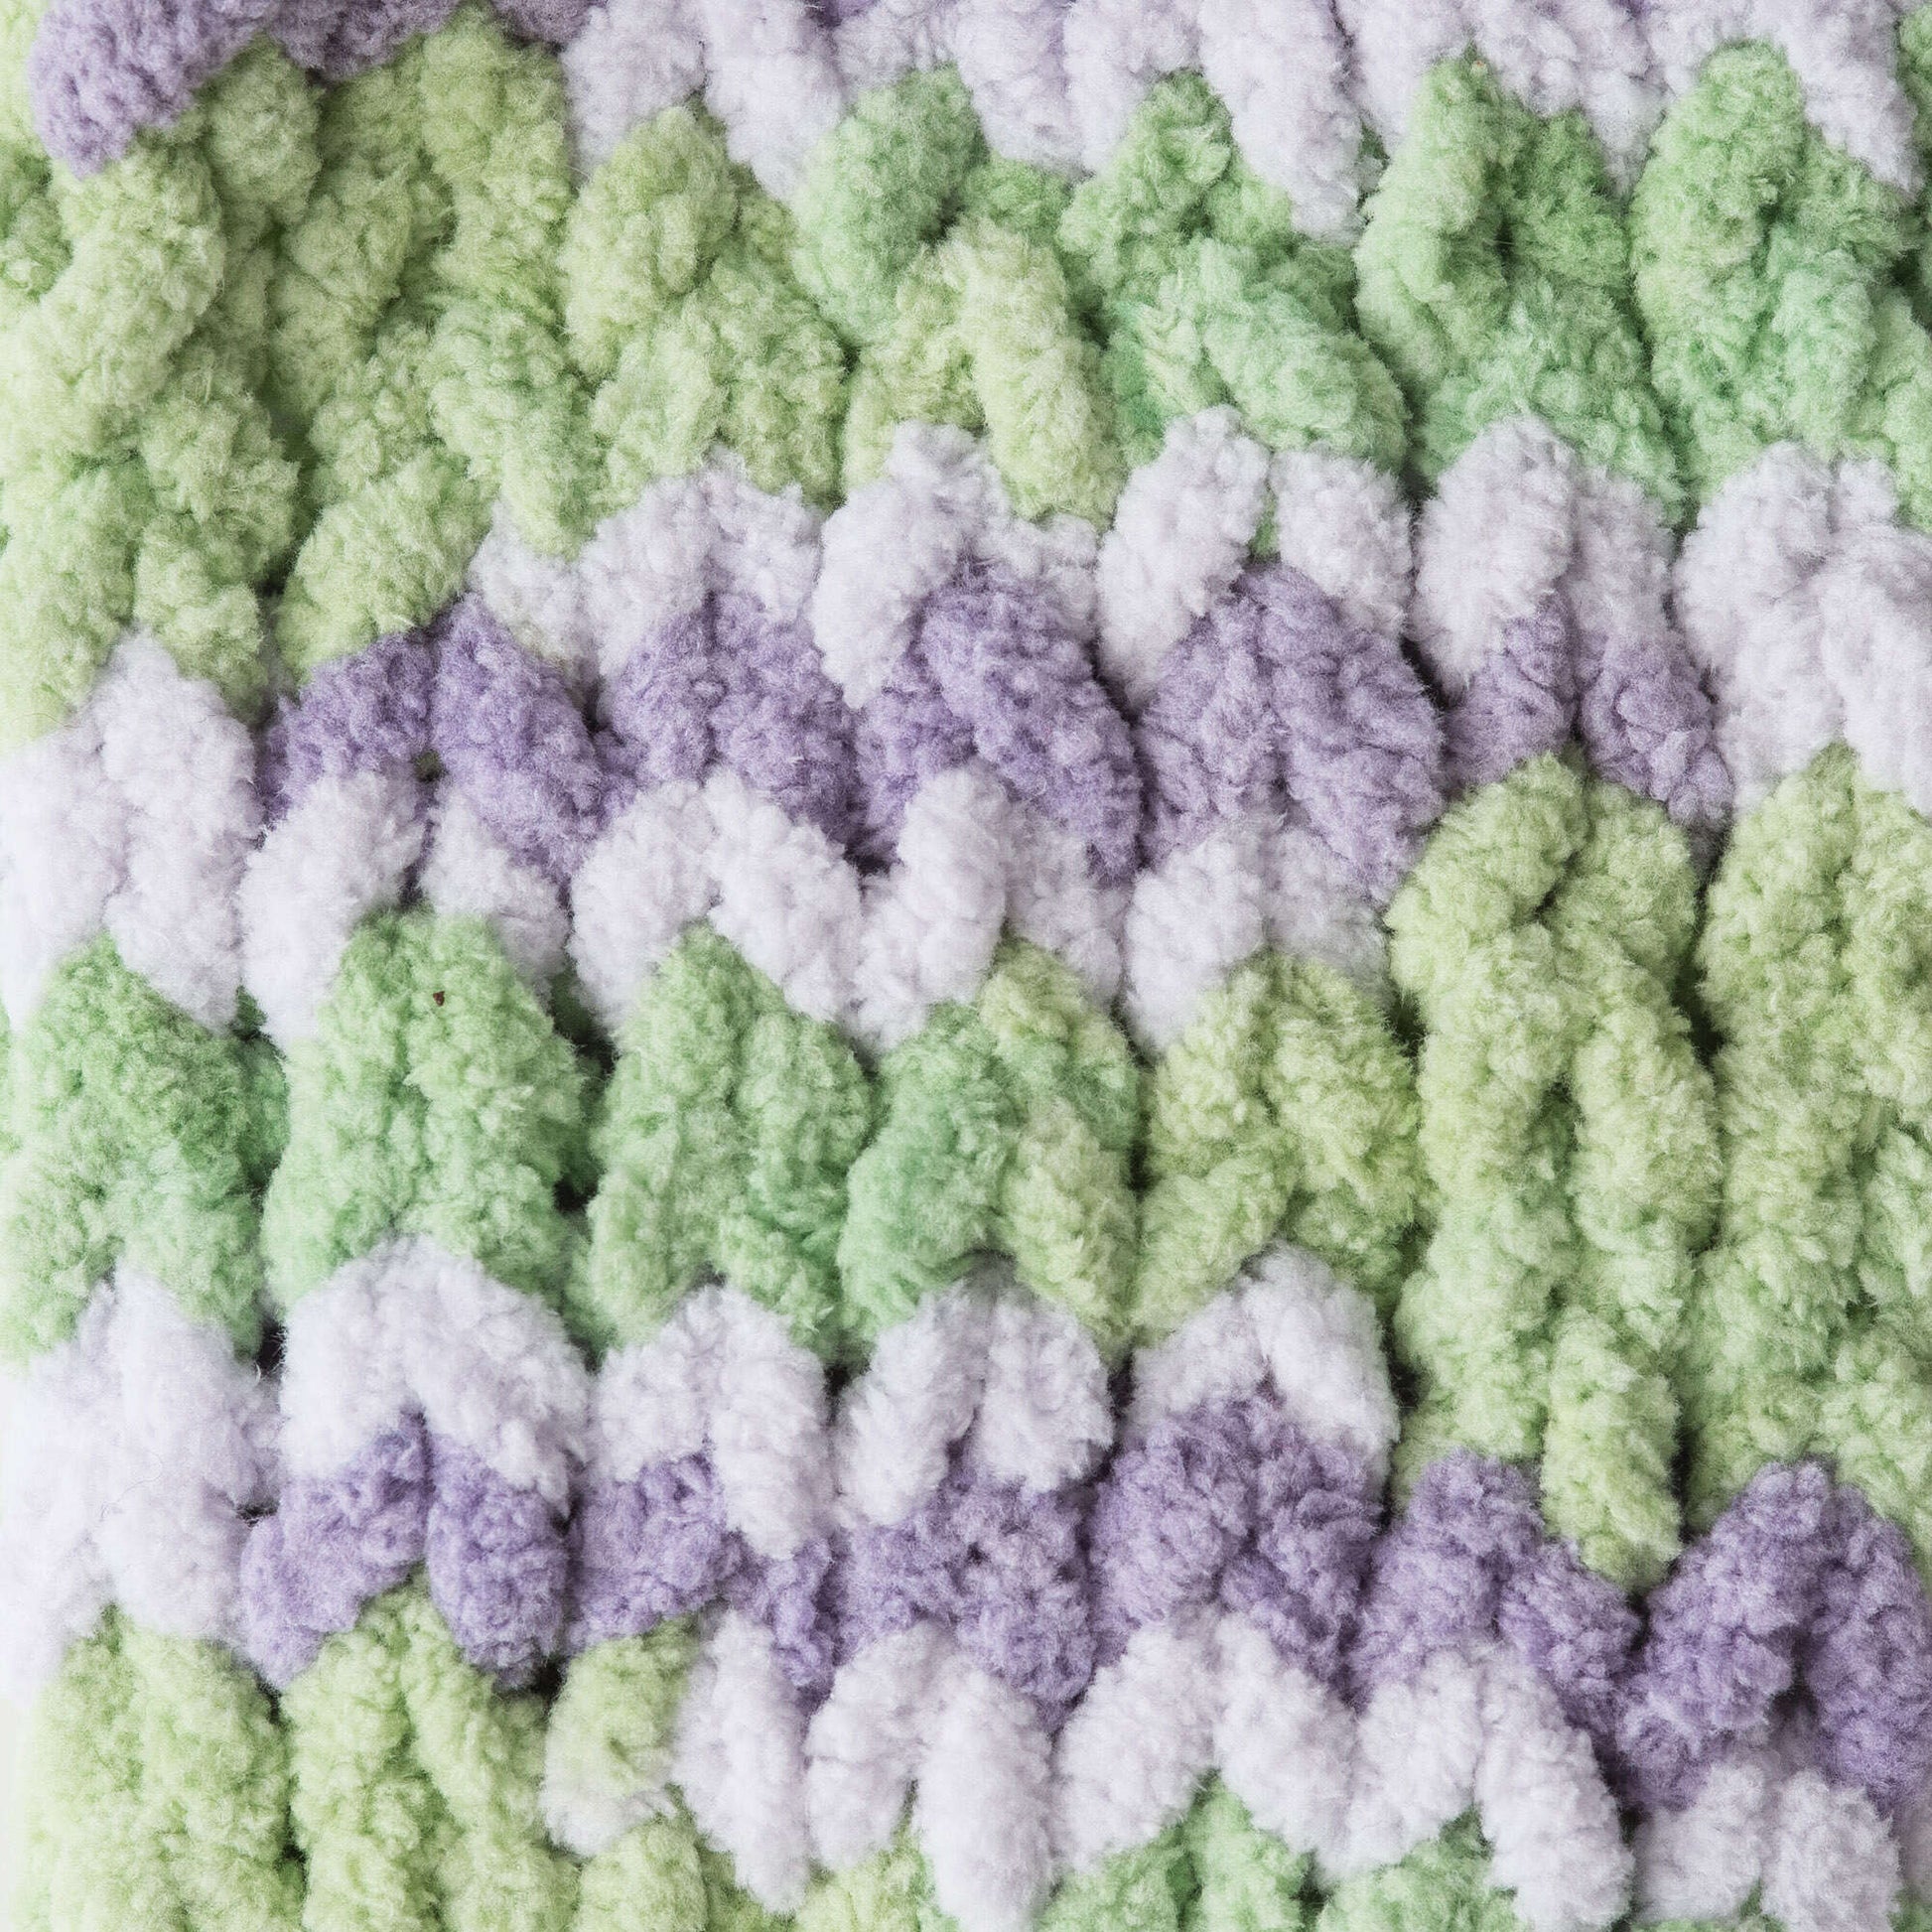 Bernat Blanket Yarn (300g/10.5oz) Lilac Leaf